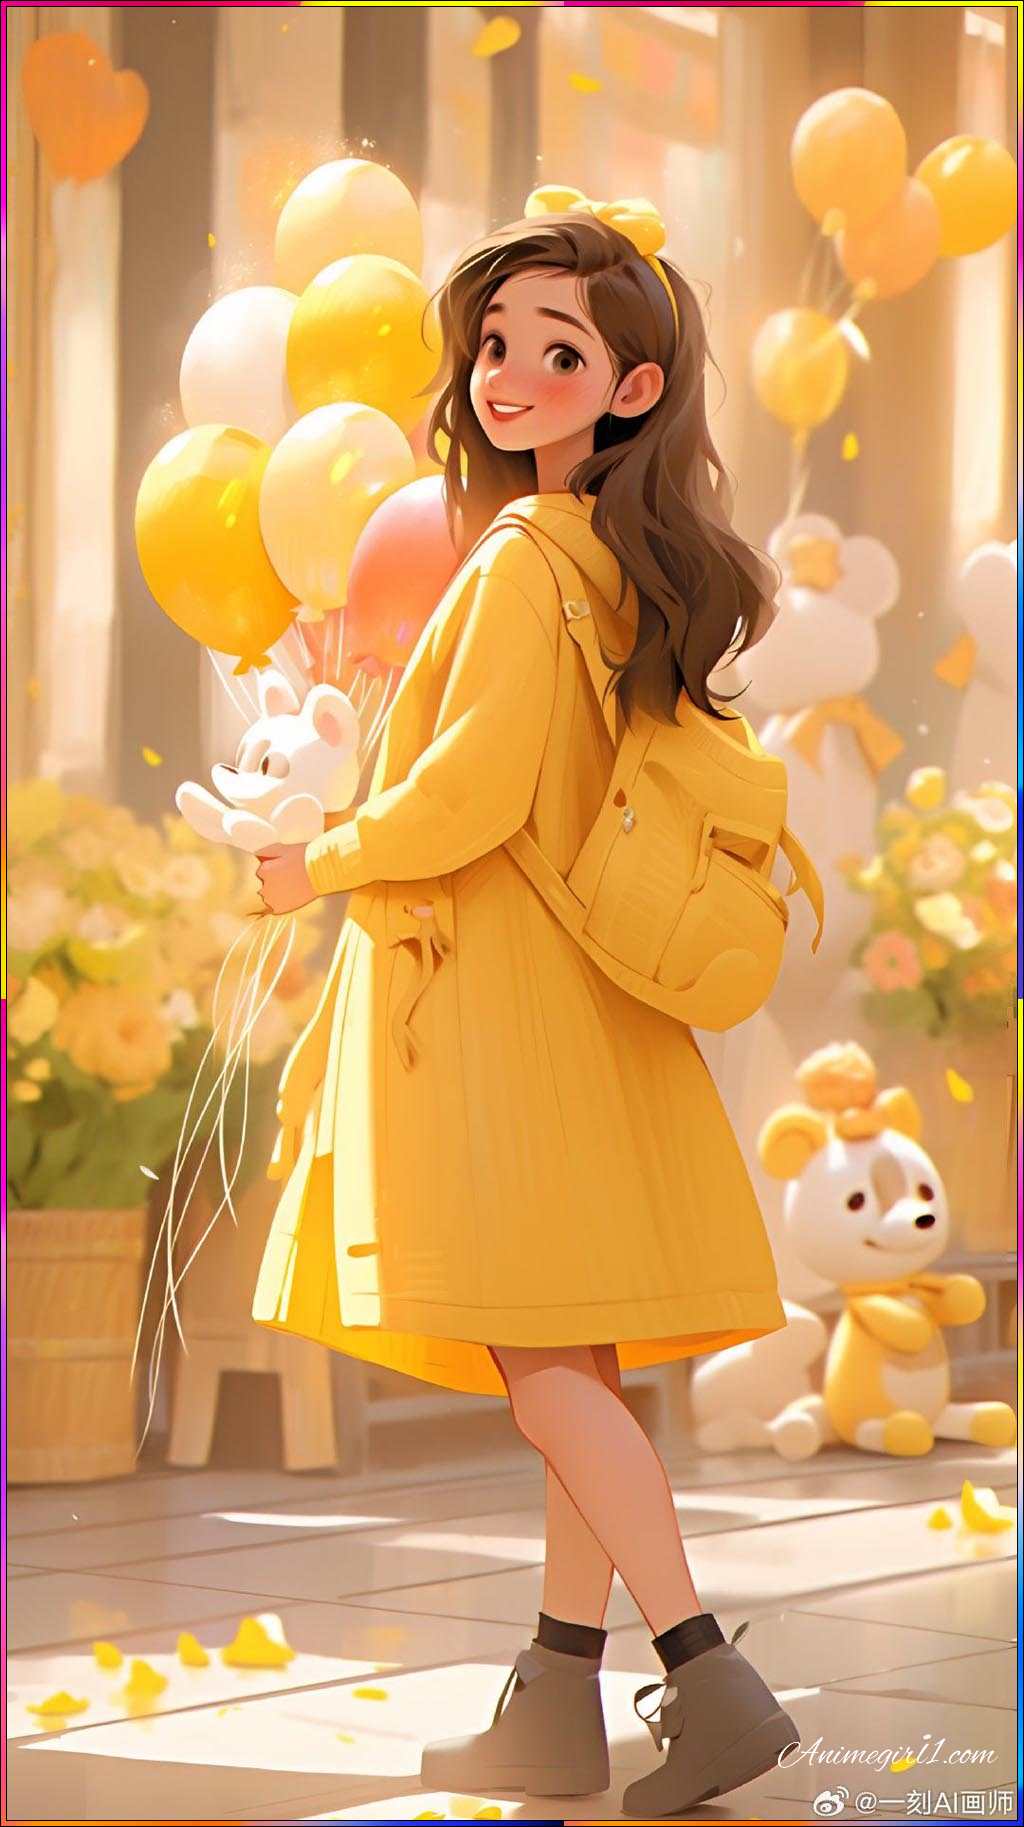 anime girl in yellow dress